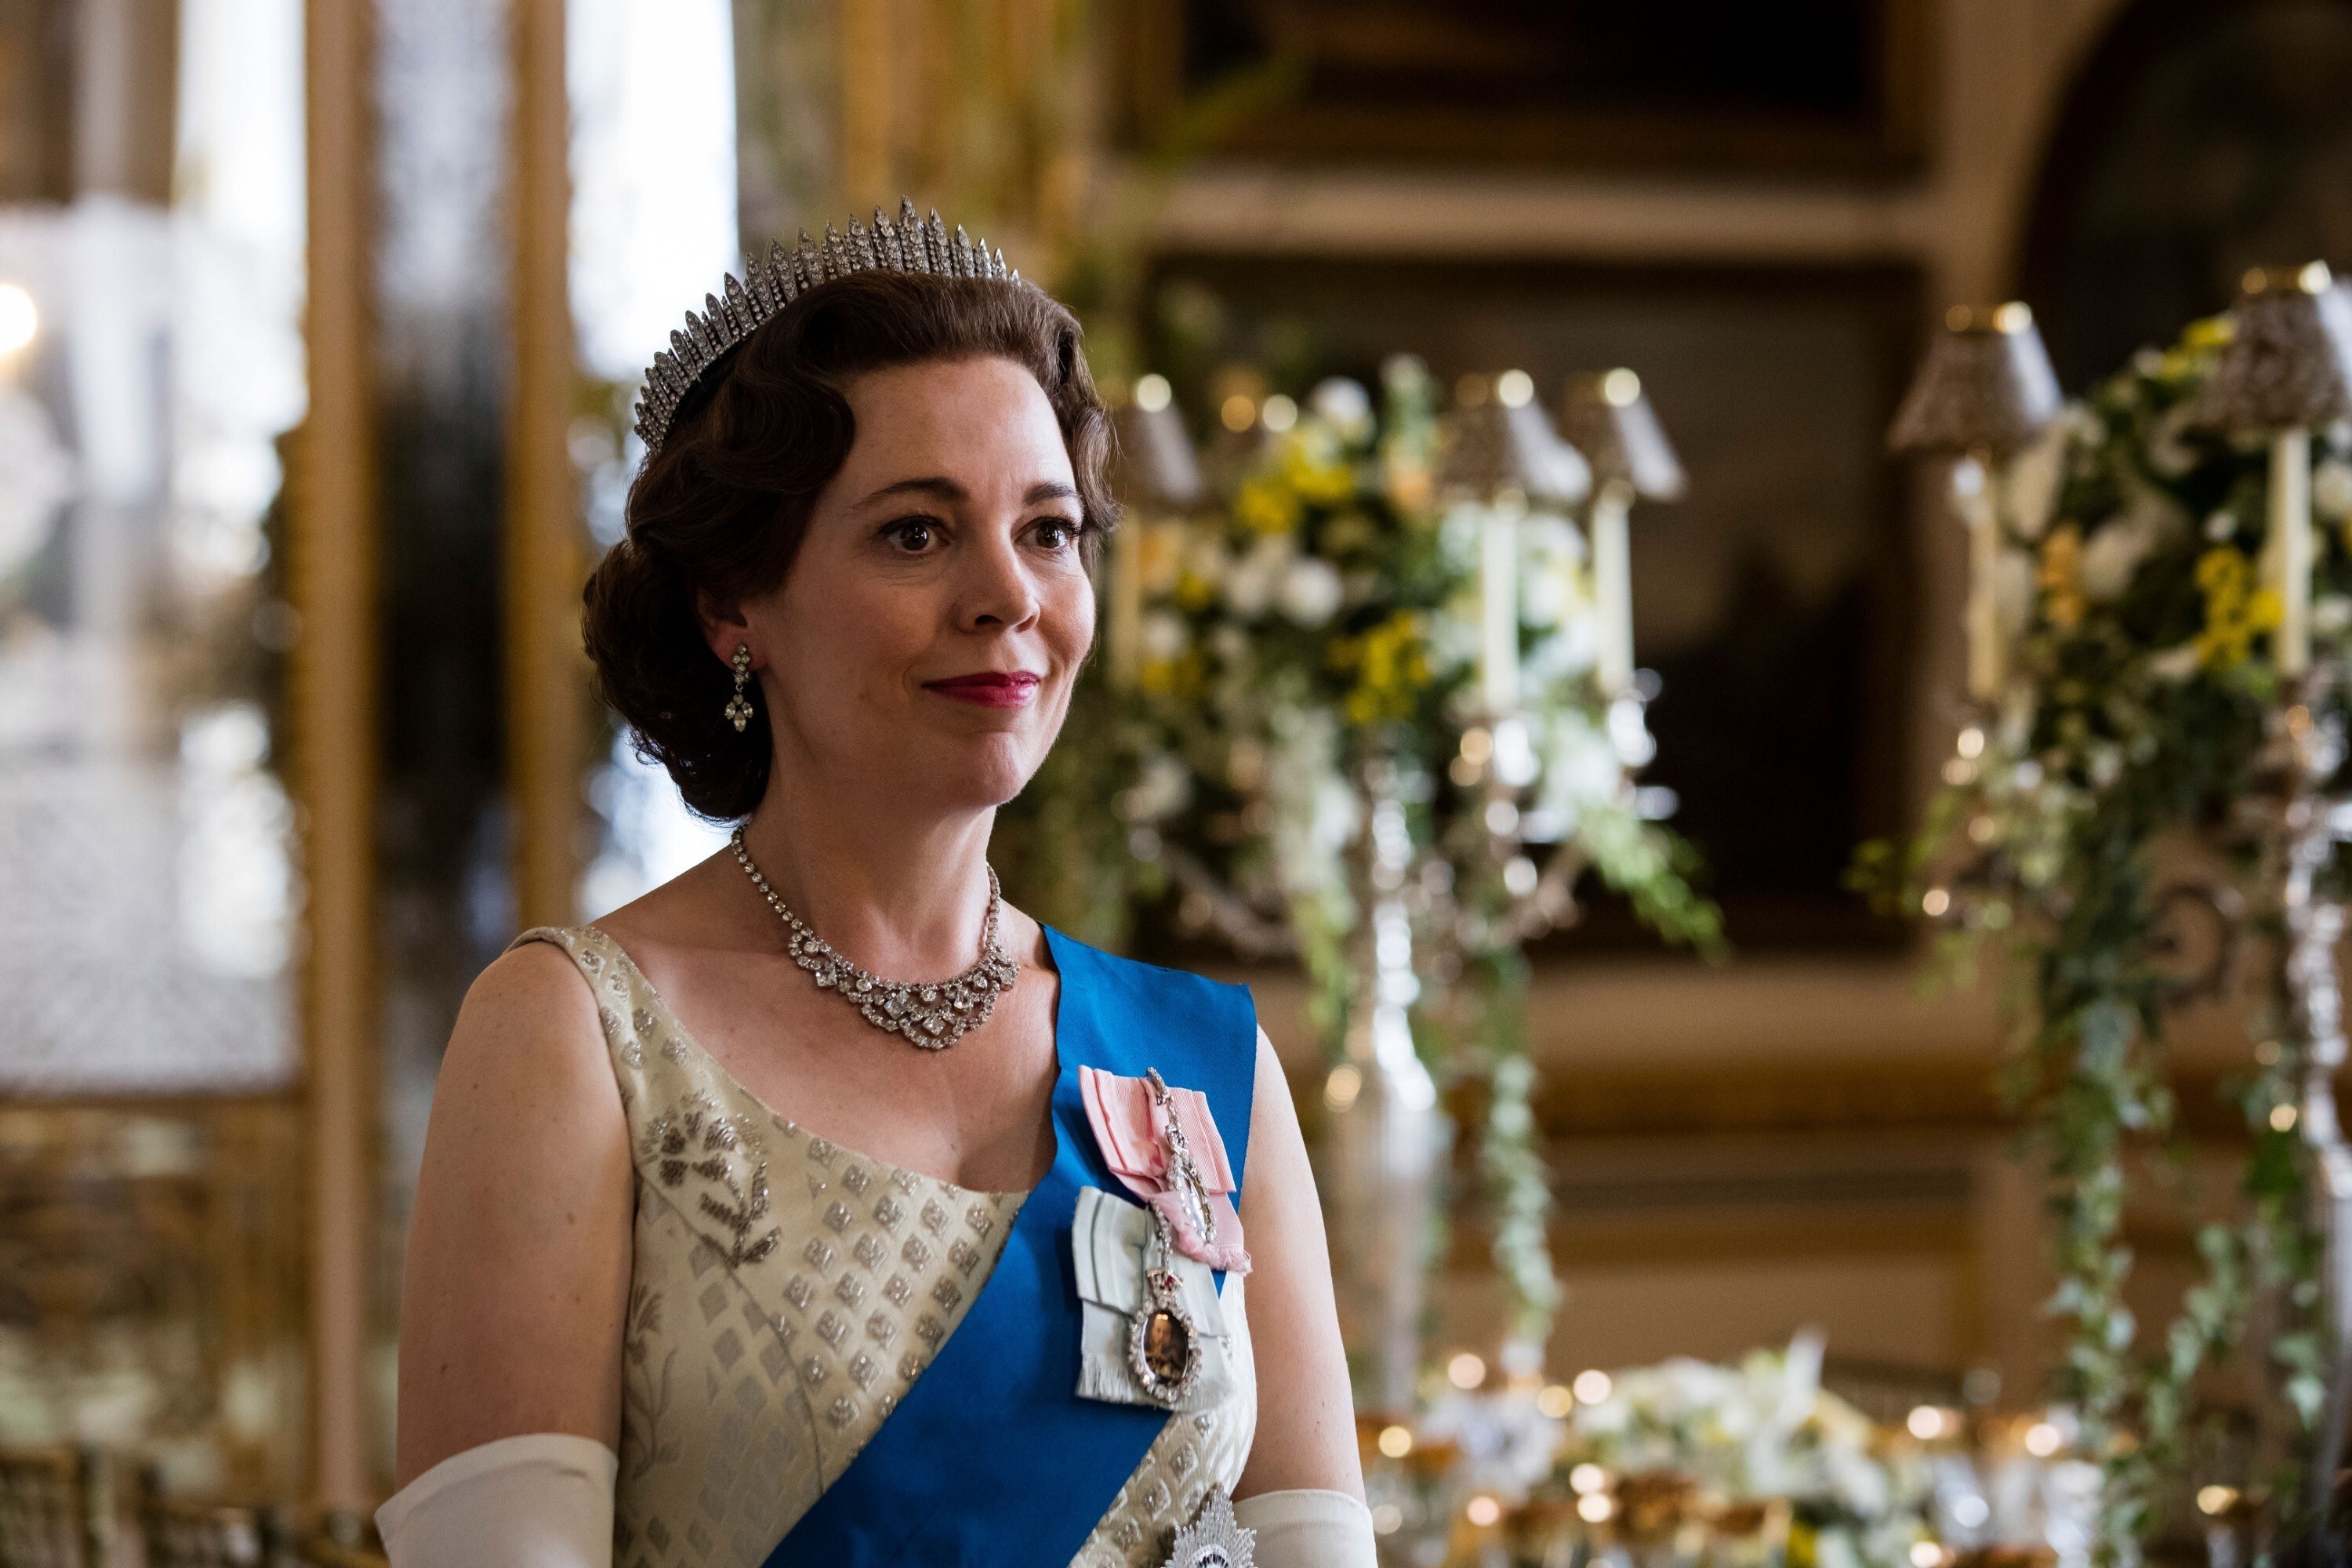 Olivia Colman as Queen Elizabeth II